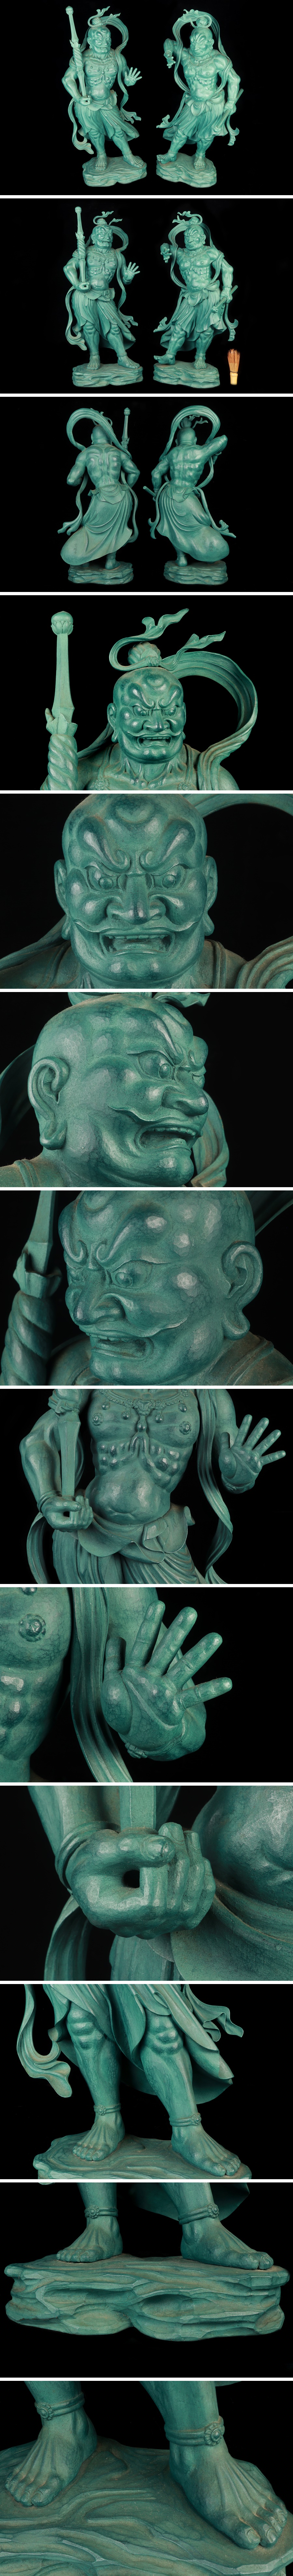 大得価最新作大仏師 松久宗琳 銅器 金剛力士像 阿吽 一対 置物 高さ:58.5cm 仏教美術 骨董品 美術品 1652ycfz 仏像